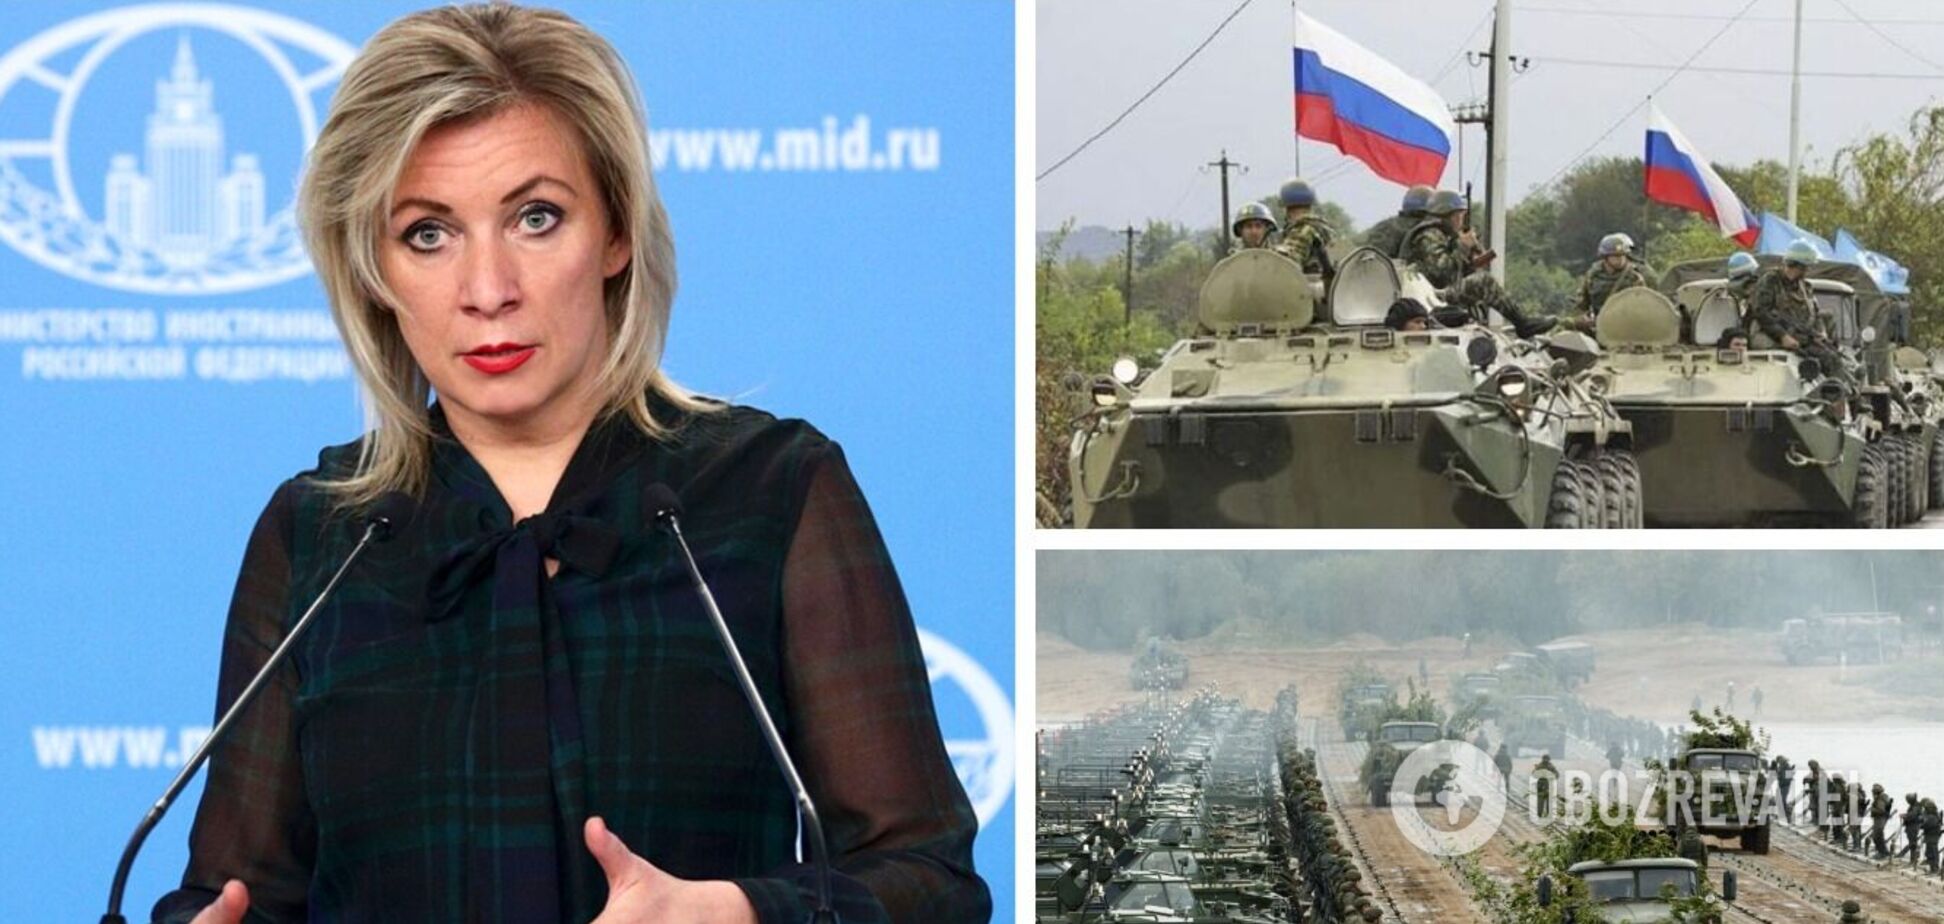 Захарова отреагировала на данные США об угрозе вторжения РФ в Украину: имеем законное право